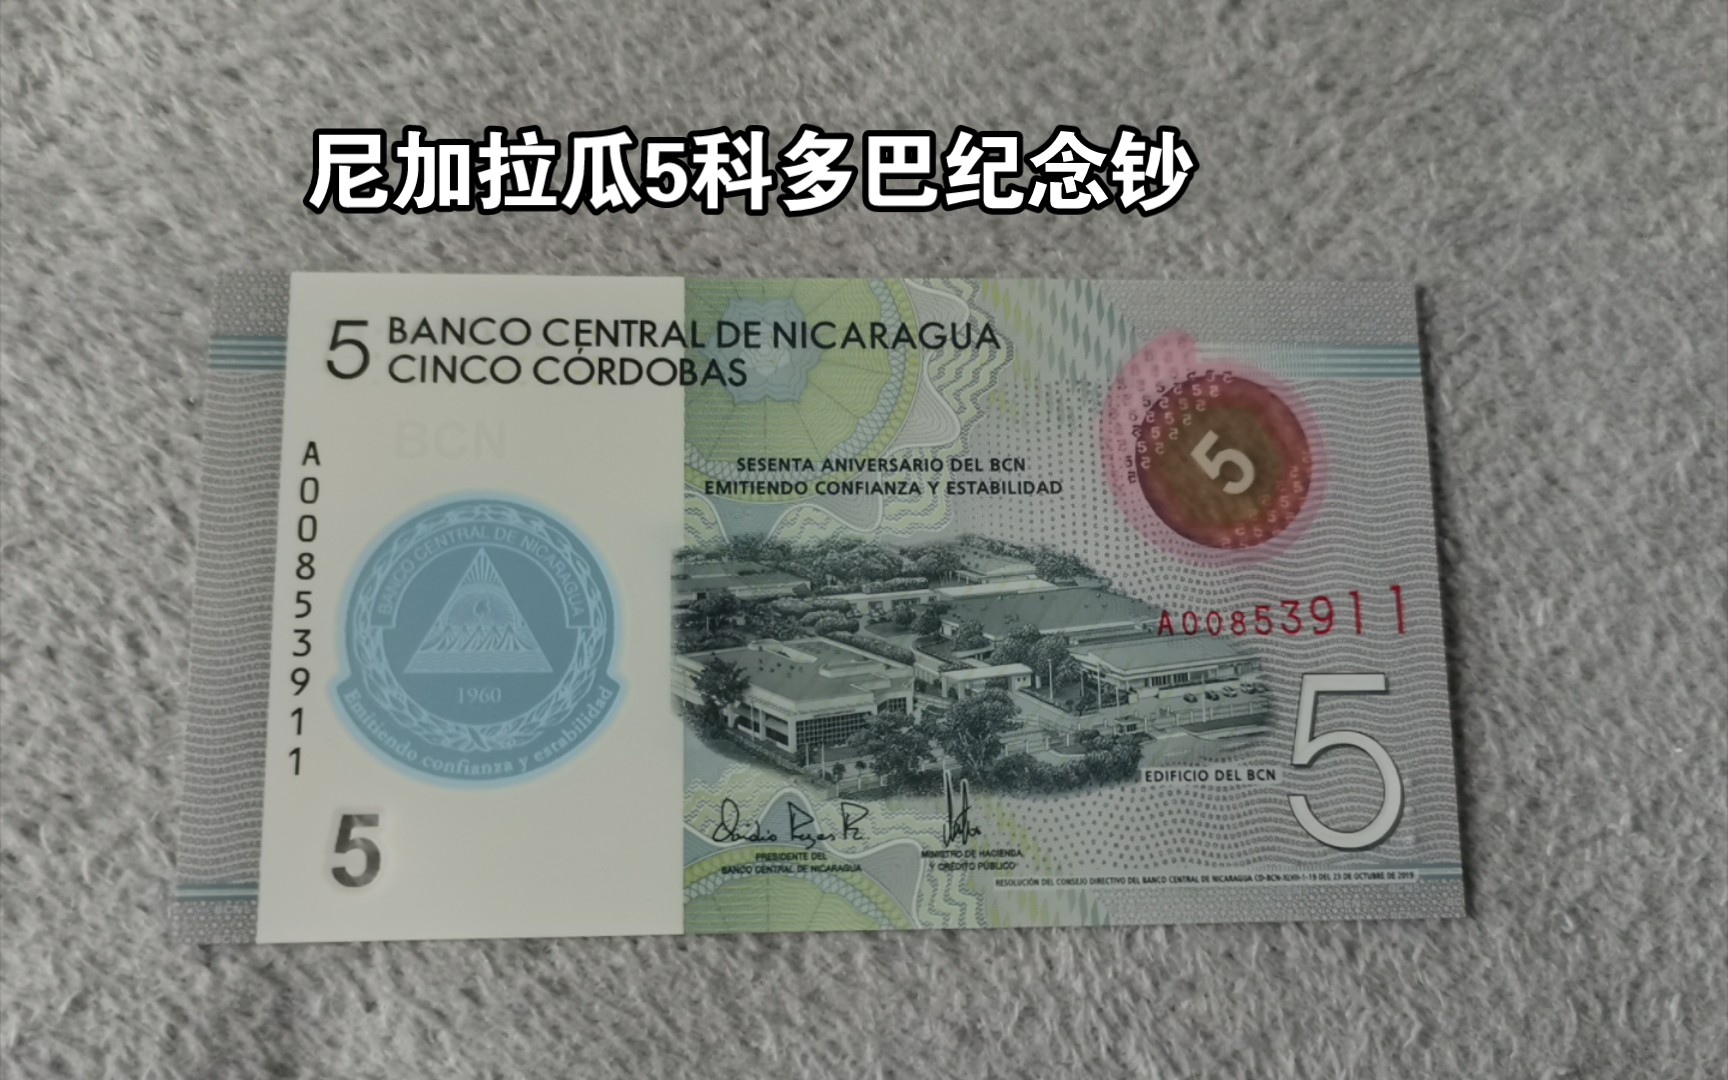 外币收藏-尼加拉瓜5科多巴纪念钞设计&防伪简介（主题：尼加拉瓜中央银行成立60周年）